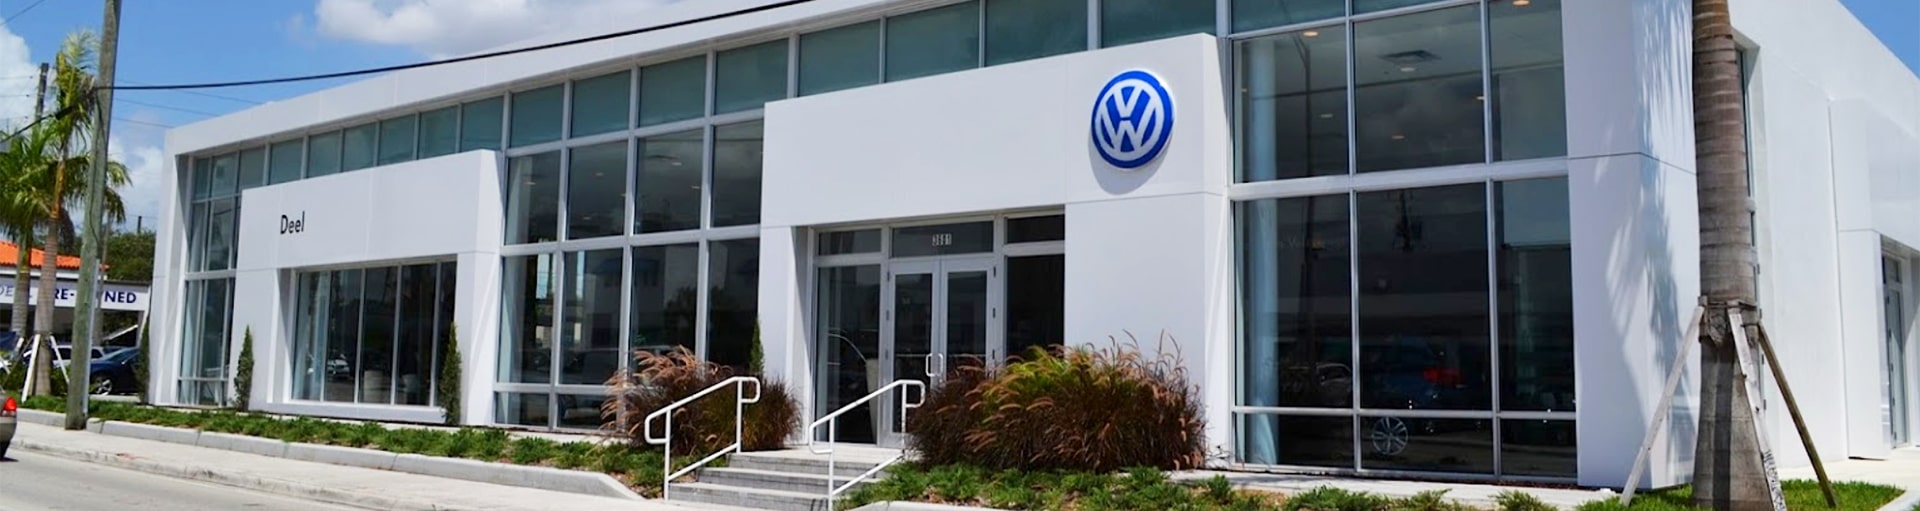 Deel Volkswagen Service Center